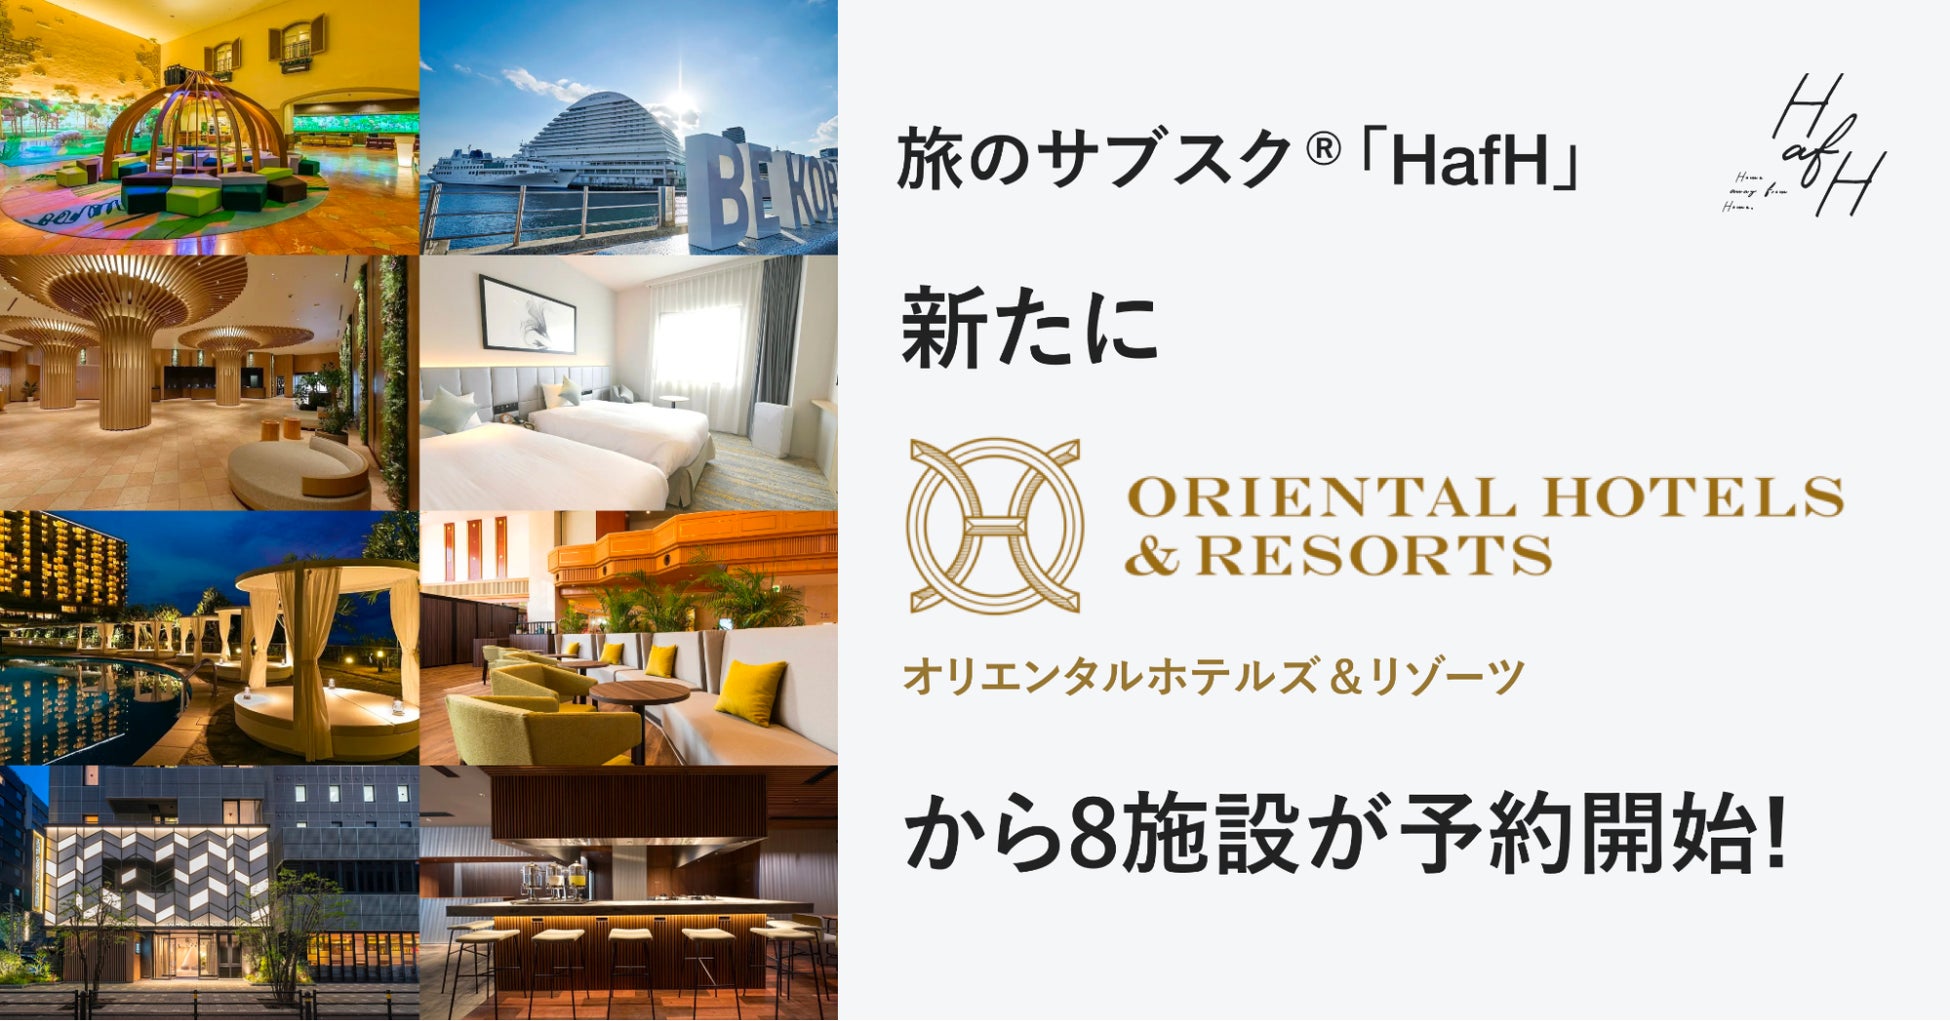 【奈良ホテル】奈良ホテル検定１級合格者による“動画で見る館内案内” を限定公開 歴史を語り継ぐプロジェクト「奈良ホテル検定」の実施について